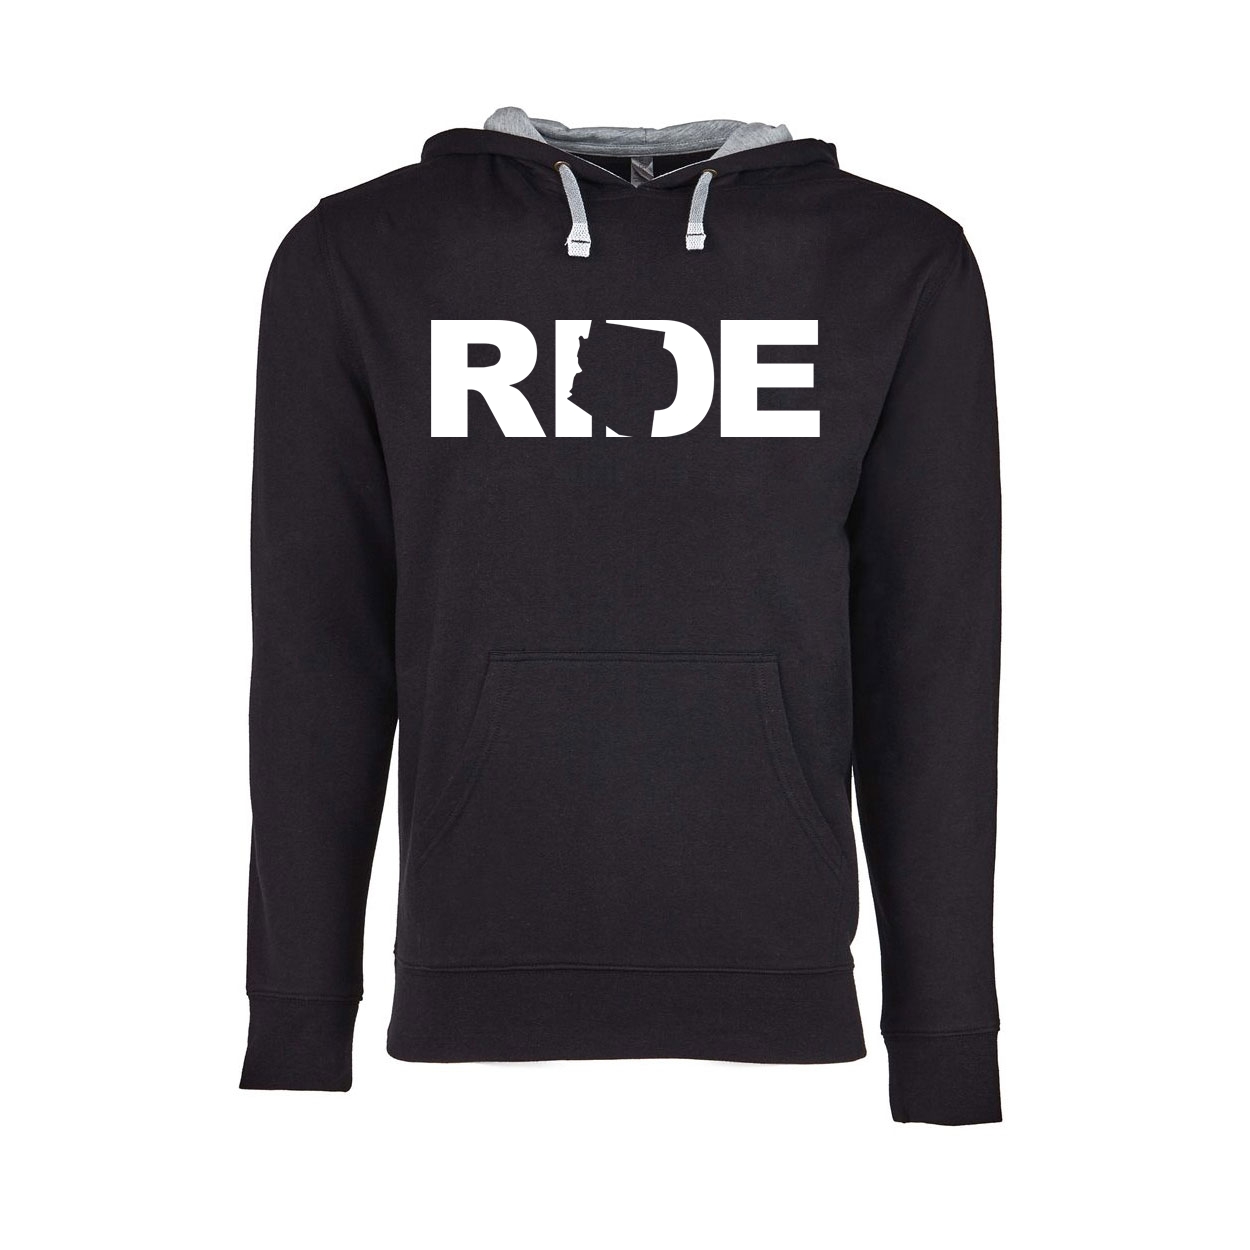 Ride Arizona Classic Lightweight Sweatshirt Black/Heather Gray (White Logo)